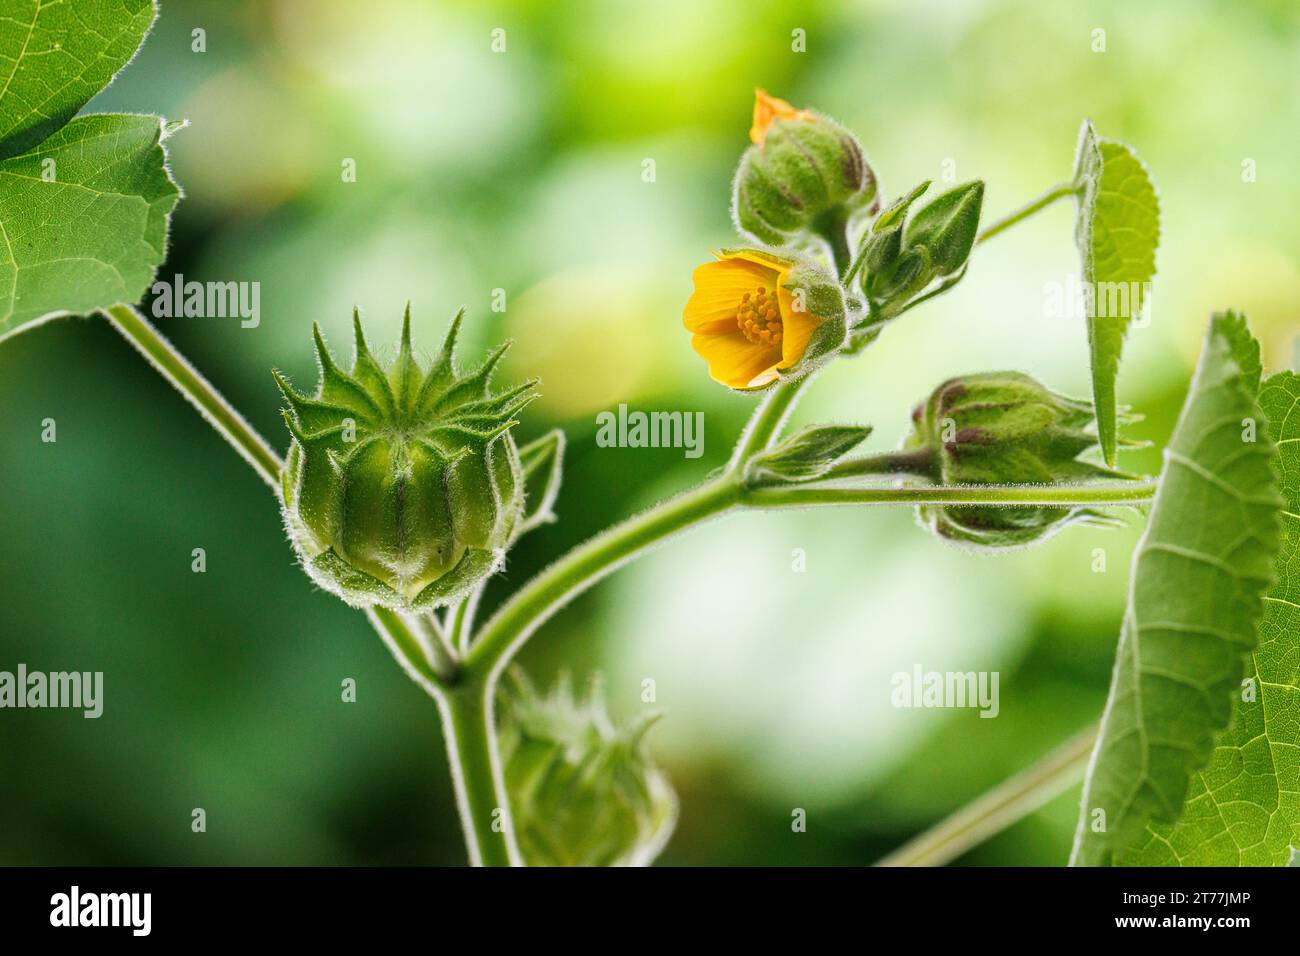 Hoja de terciopelo, malva india (Abutilon theophrasti), flor y fruta Foto de stock